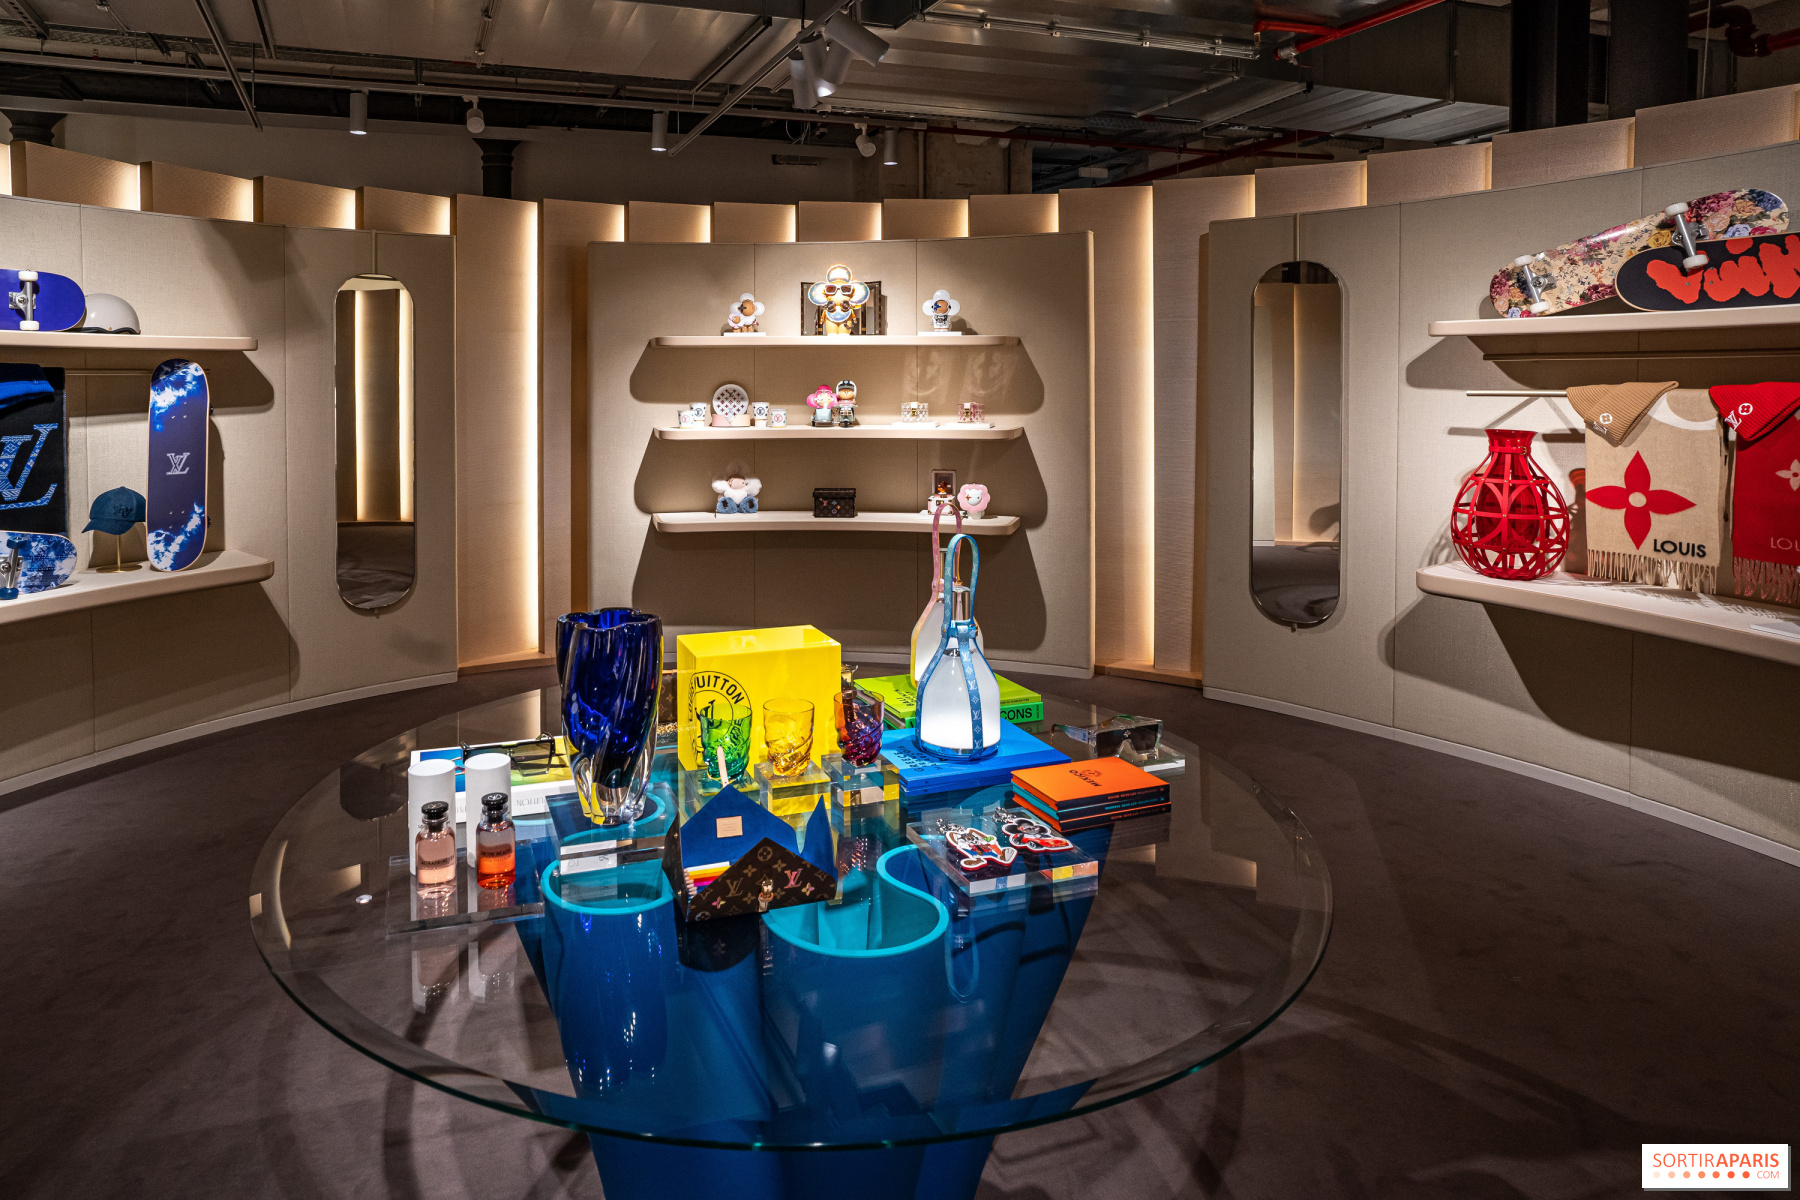 Louis Vuitton opens an exhibition and café in Paris